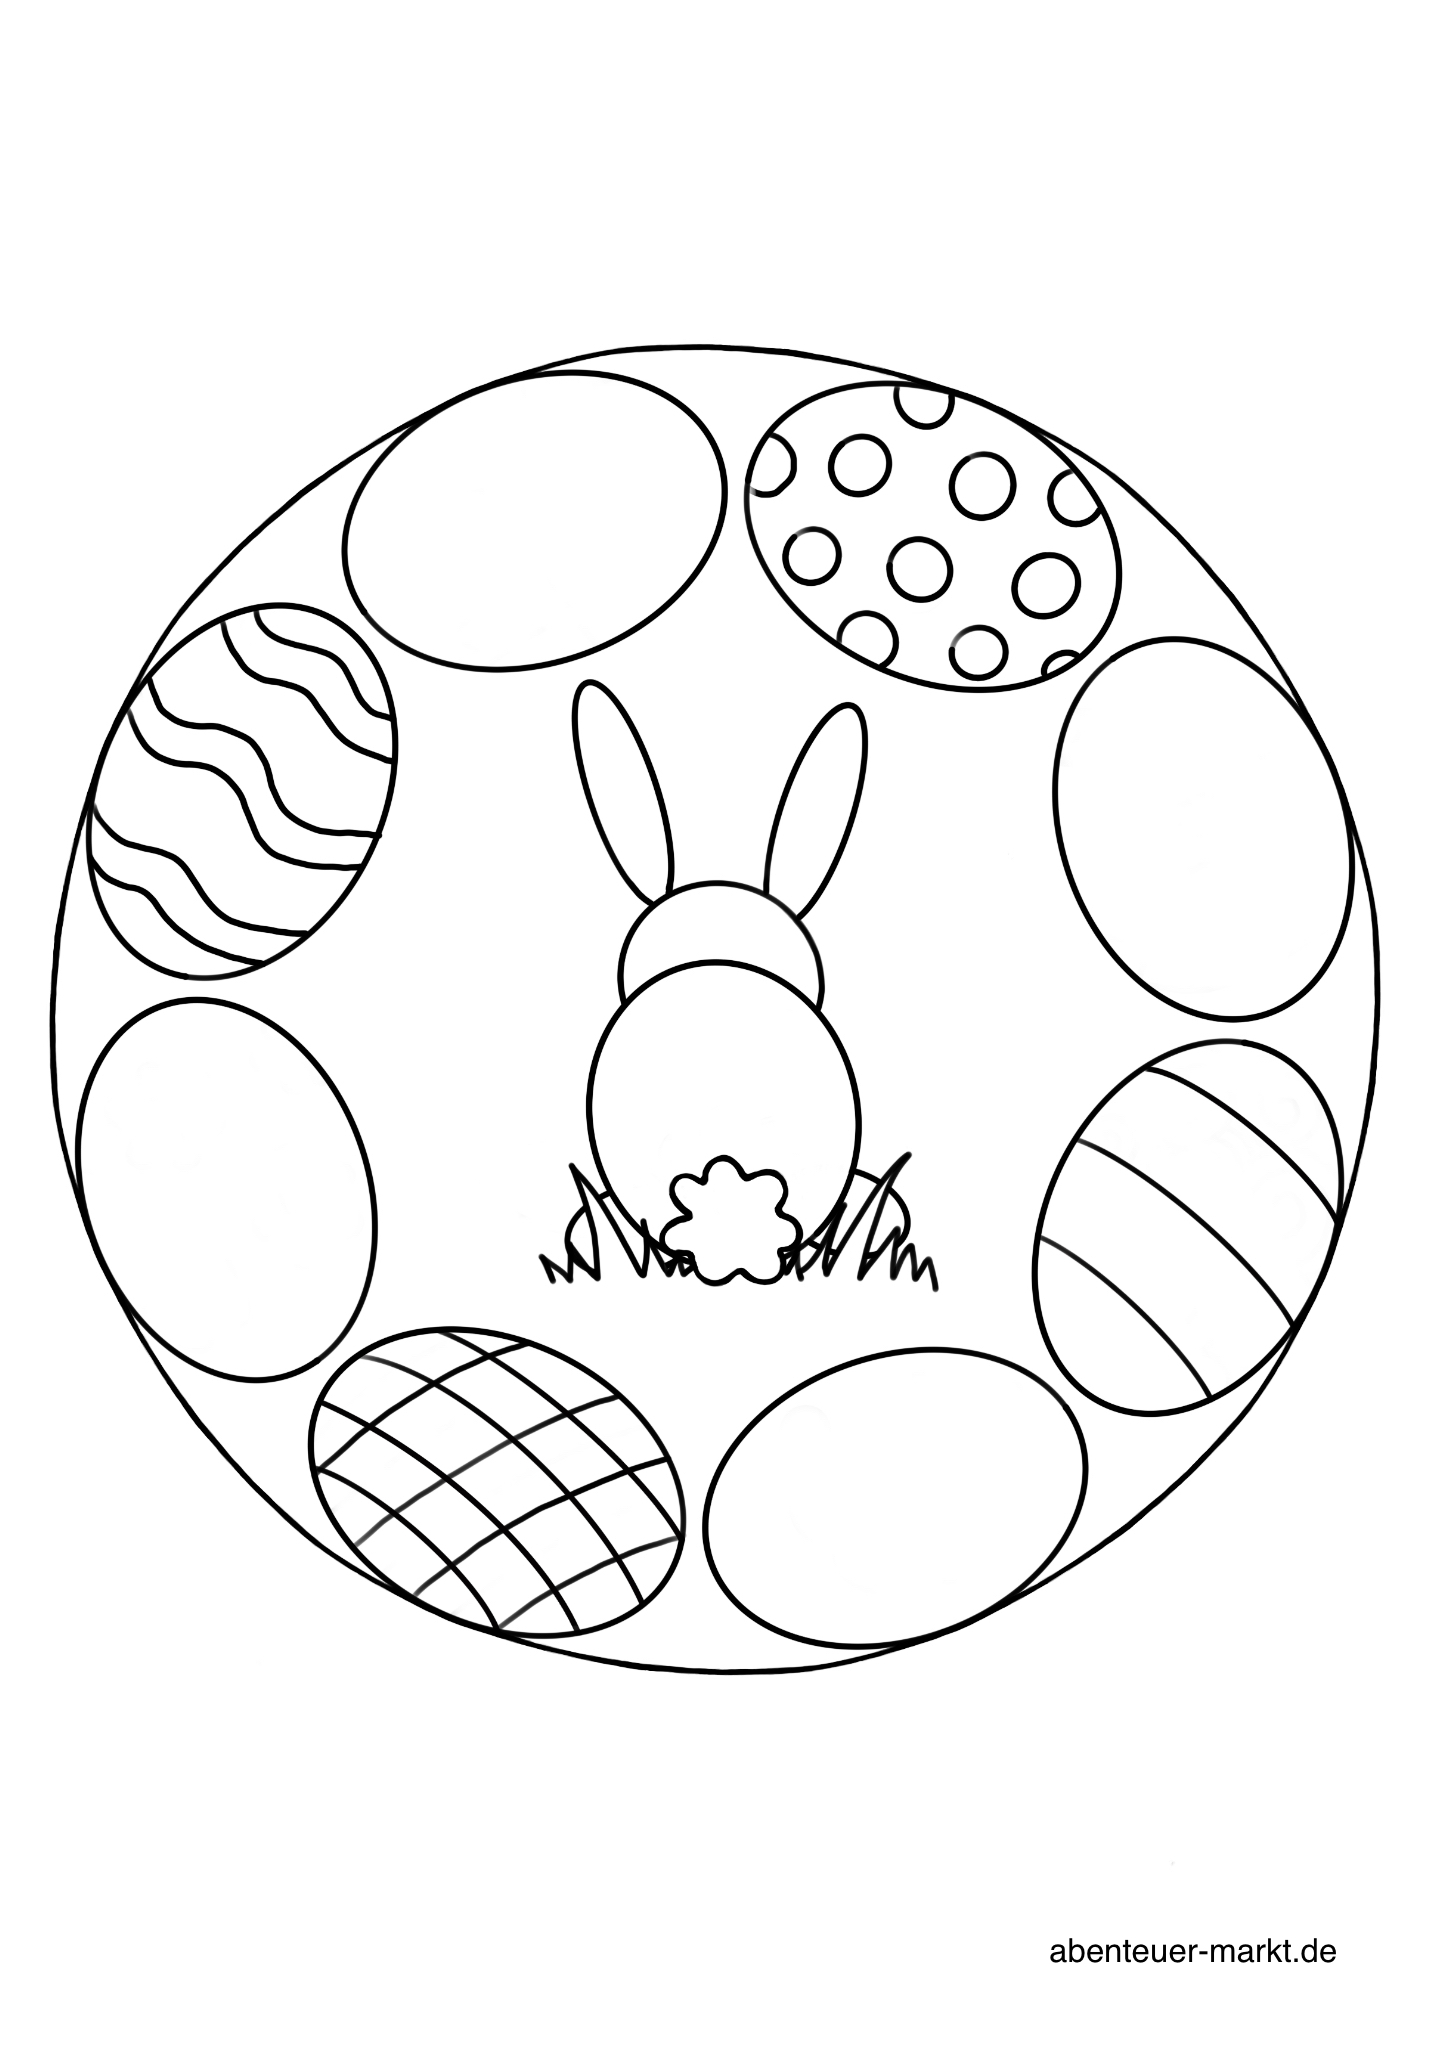 2. Bild zum Schritt 11 für das Bastel- und DIY-Abenteuer für Kinder: 'Ostereier mit filigraneren Mustern, die etwas schwerer zum Auszumalen sind...'